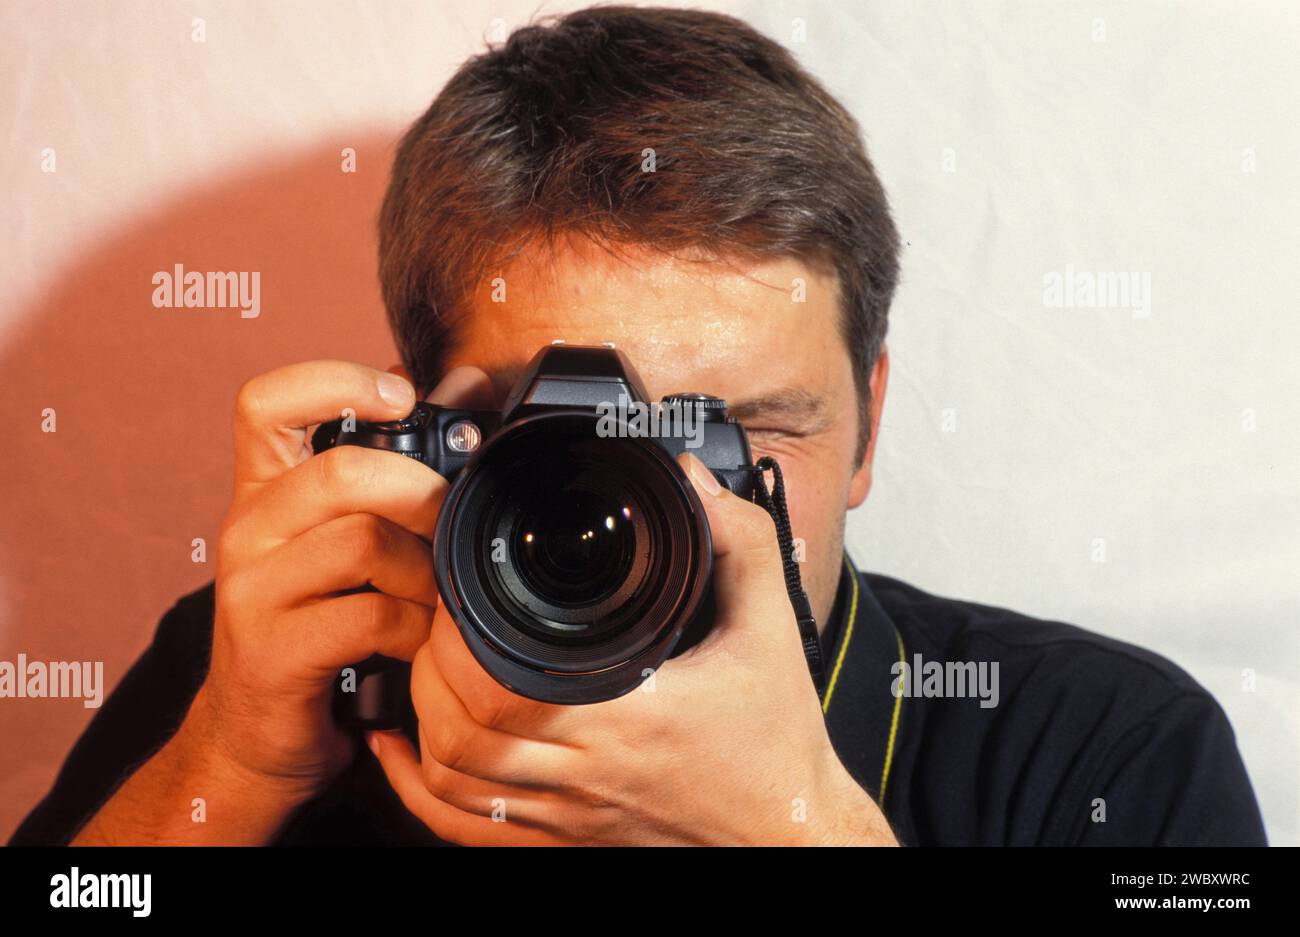 fotografo con fotocamera che scatta una foto, un ritratto, una fotocamera davanti al volto, guardando attraverso la fotocamera Foto Stock